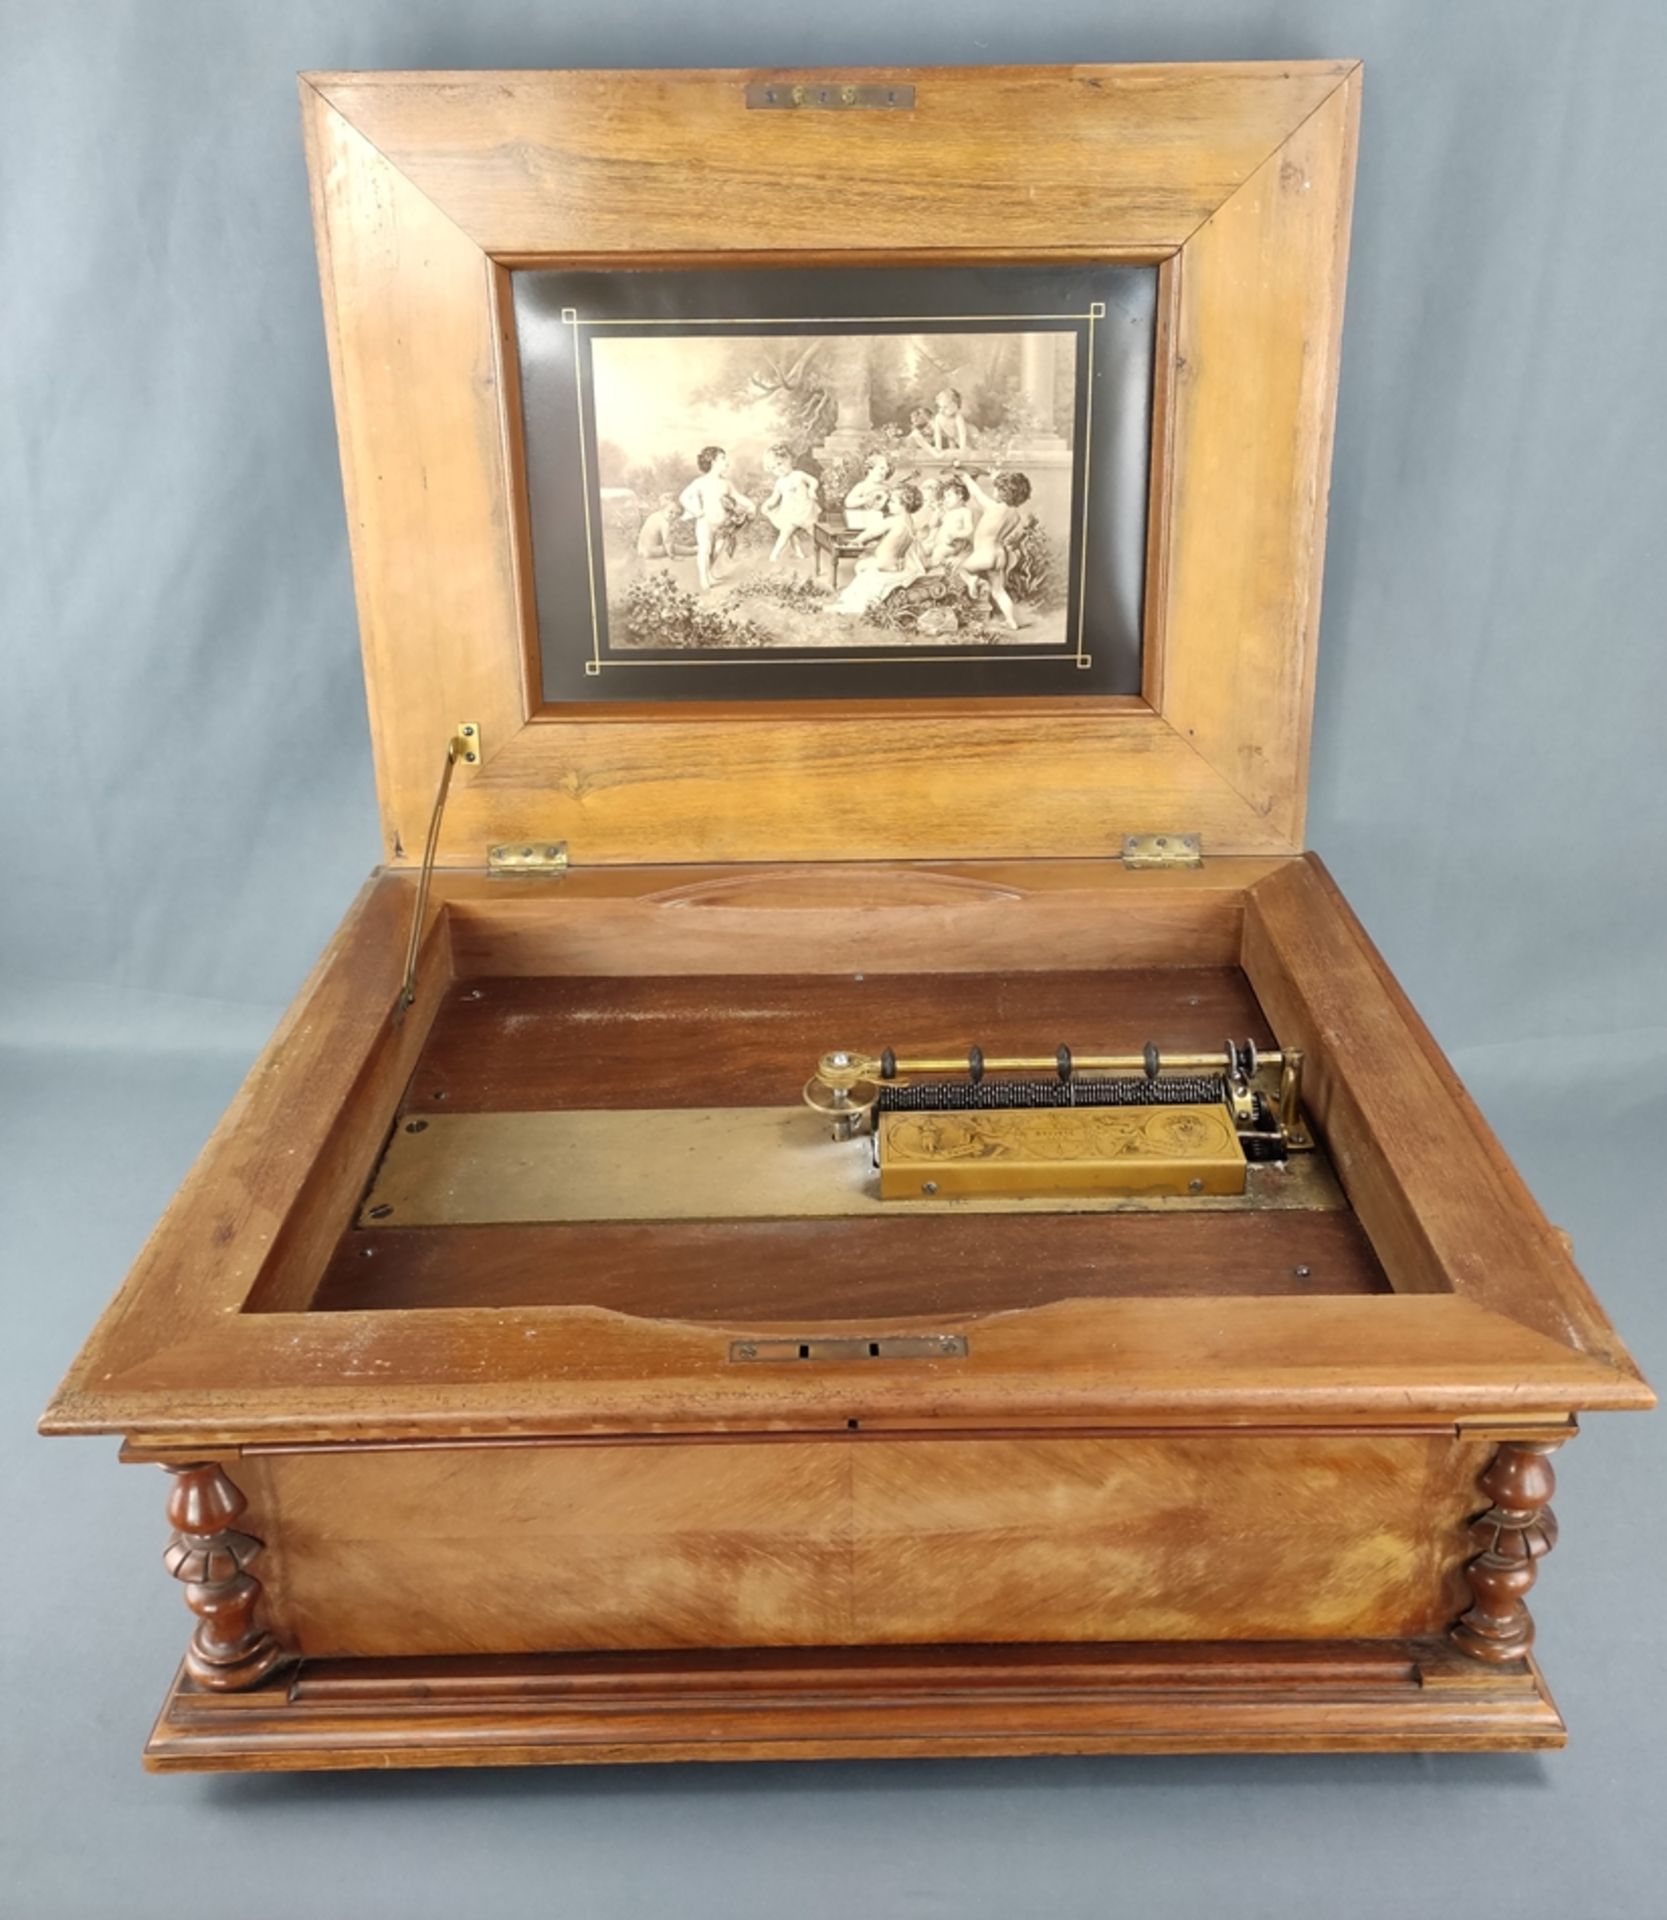 Lochplatten-Automat, Polyphon, Plattenspieldose, Historismus-Holzgehäuse, auf dem Deckel Musikinstr - Bild 2 aus 4